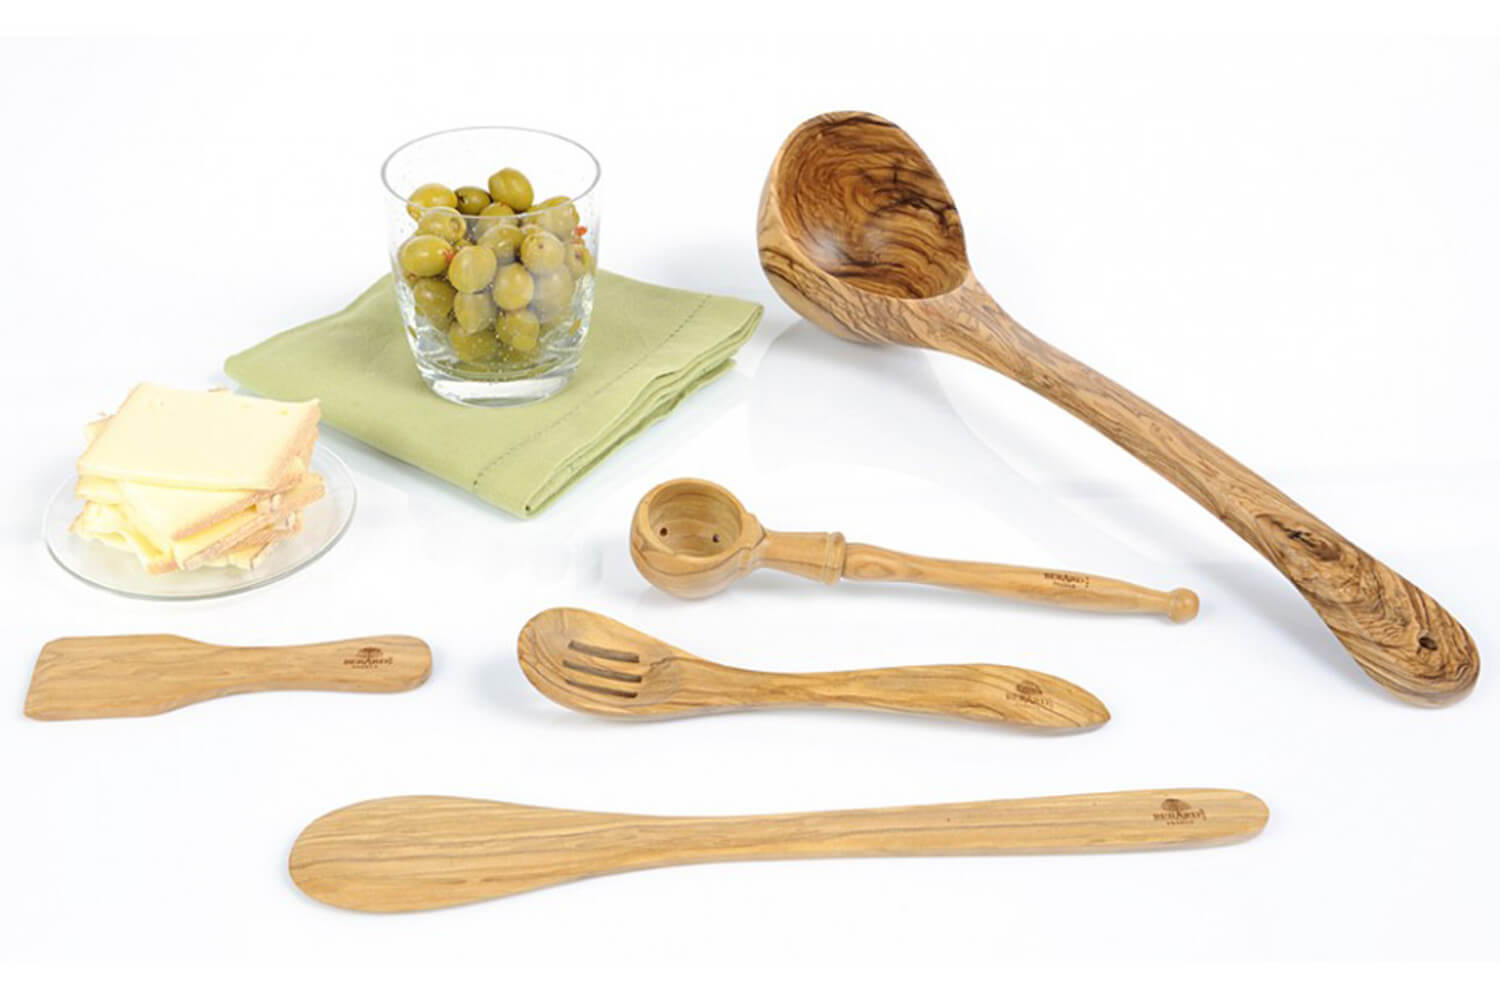 Bérard spatulette pour raclette en bois d'olivier